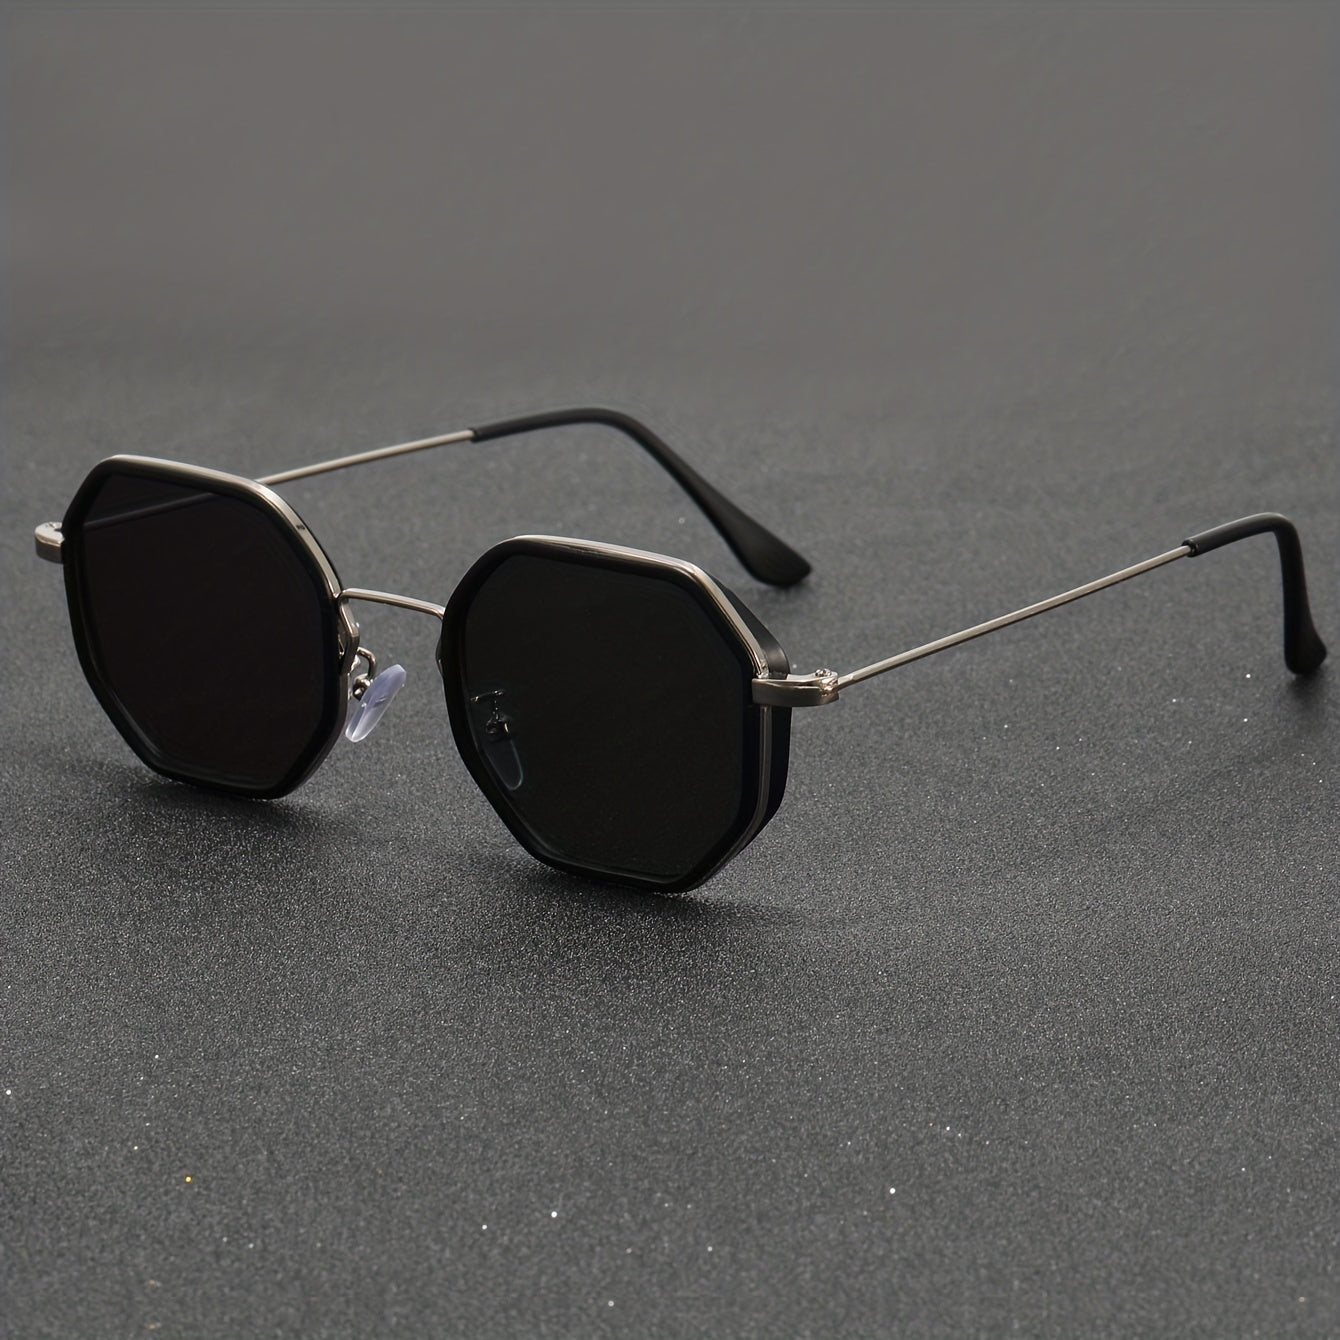 Schattenförmige Polygongestaltung für Frauen und Männer. Retro-Sommer-Sonnenbrillen für das Fahren am Strand und auf Reisen.